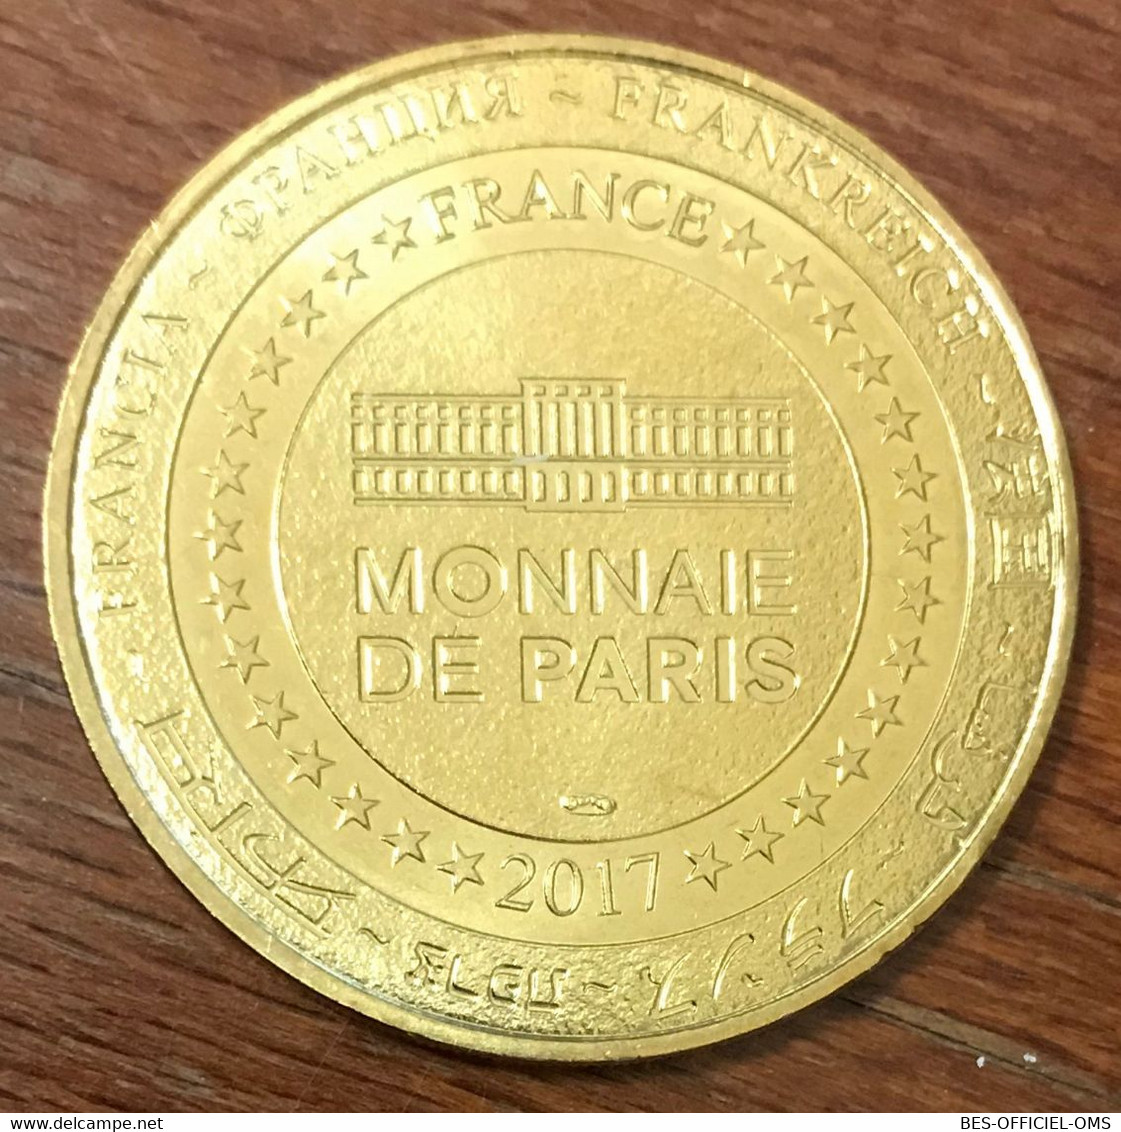 14 BAYEUX CATHÉDRALE NOTRE DAME 940 ANS MDP 2017 MÉDAILLE MONNAIE DE PARIS JETON TOURISTIQUE MEDALS TOKENS COINS - 2017